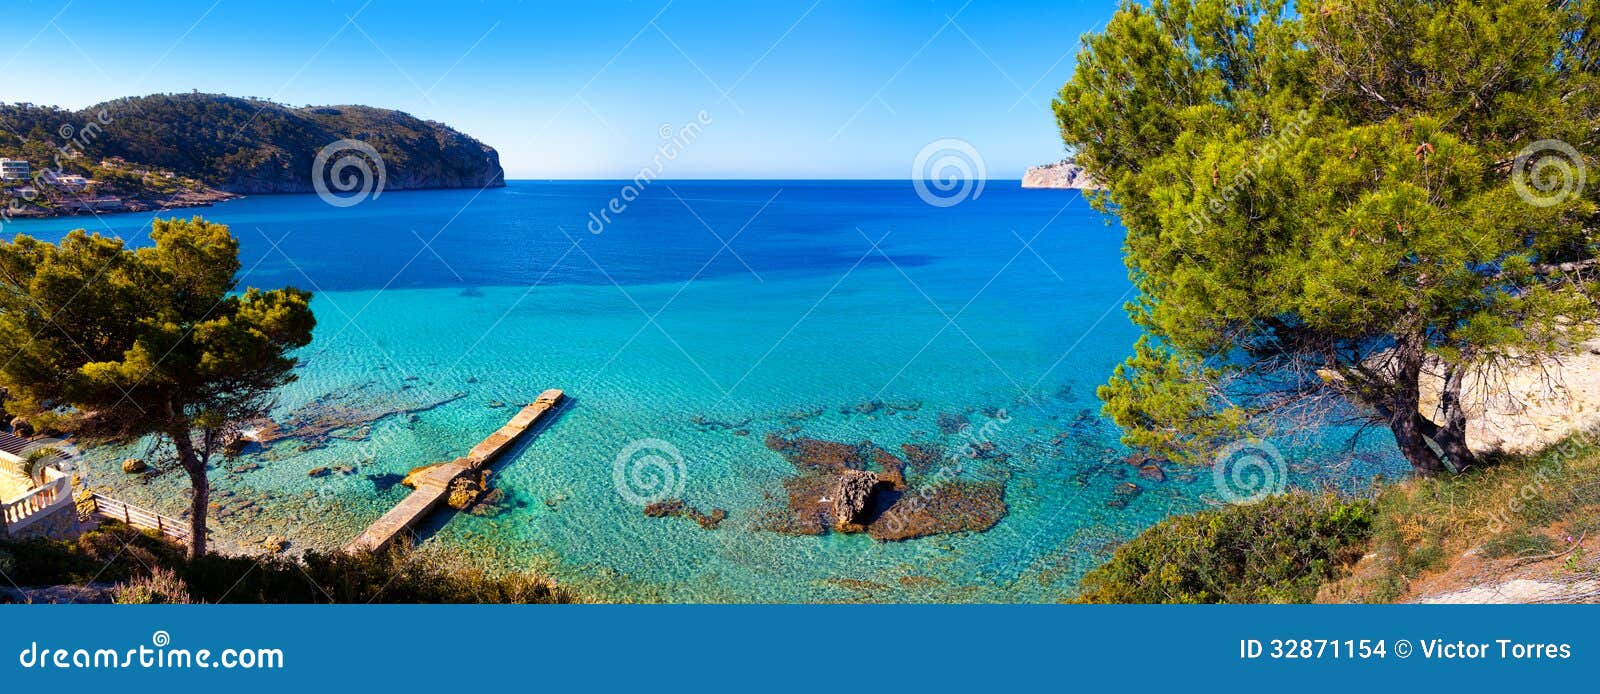 idyllic sea view in mallorca